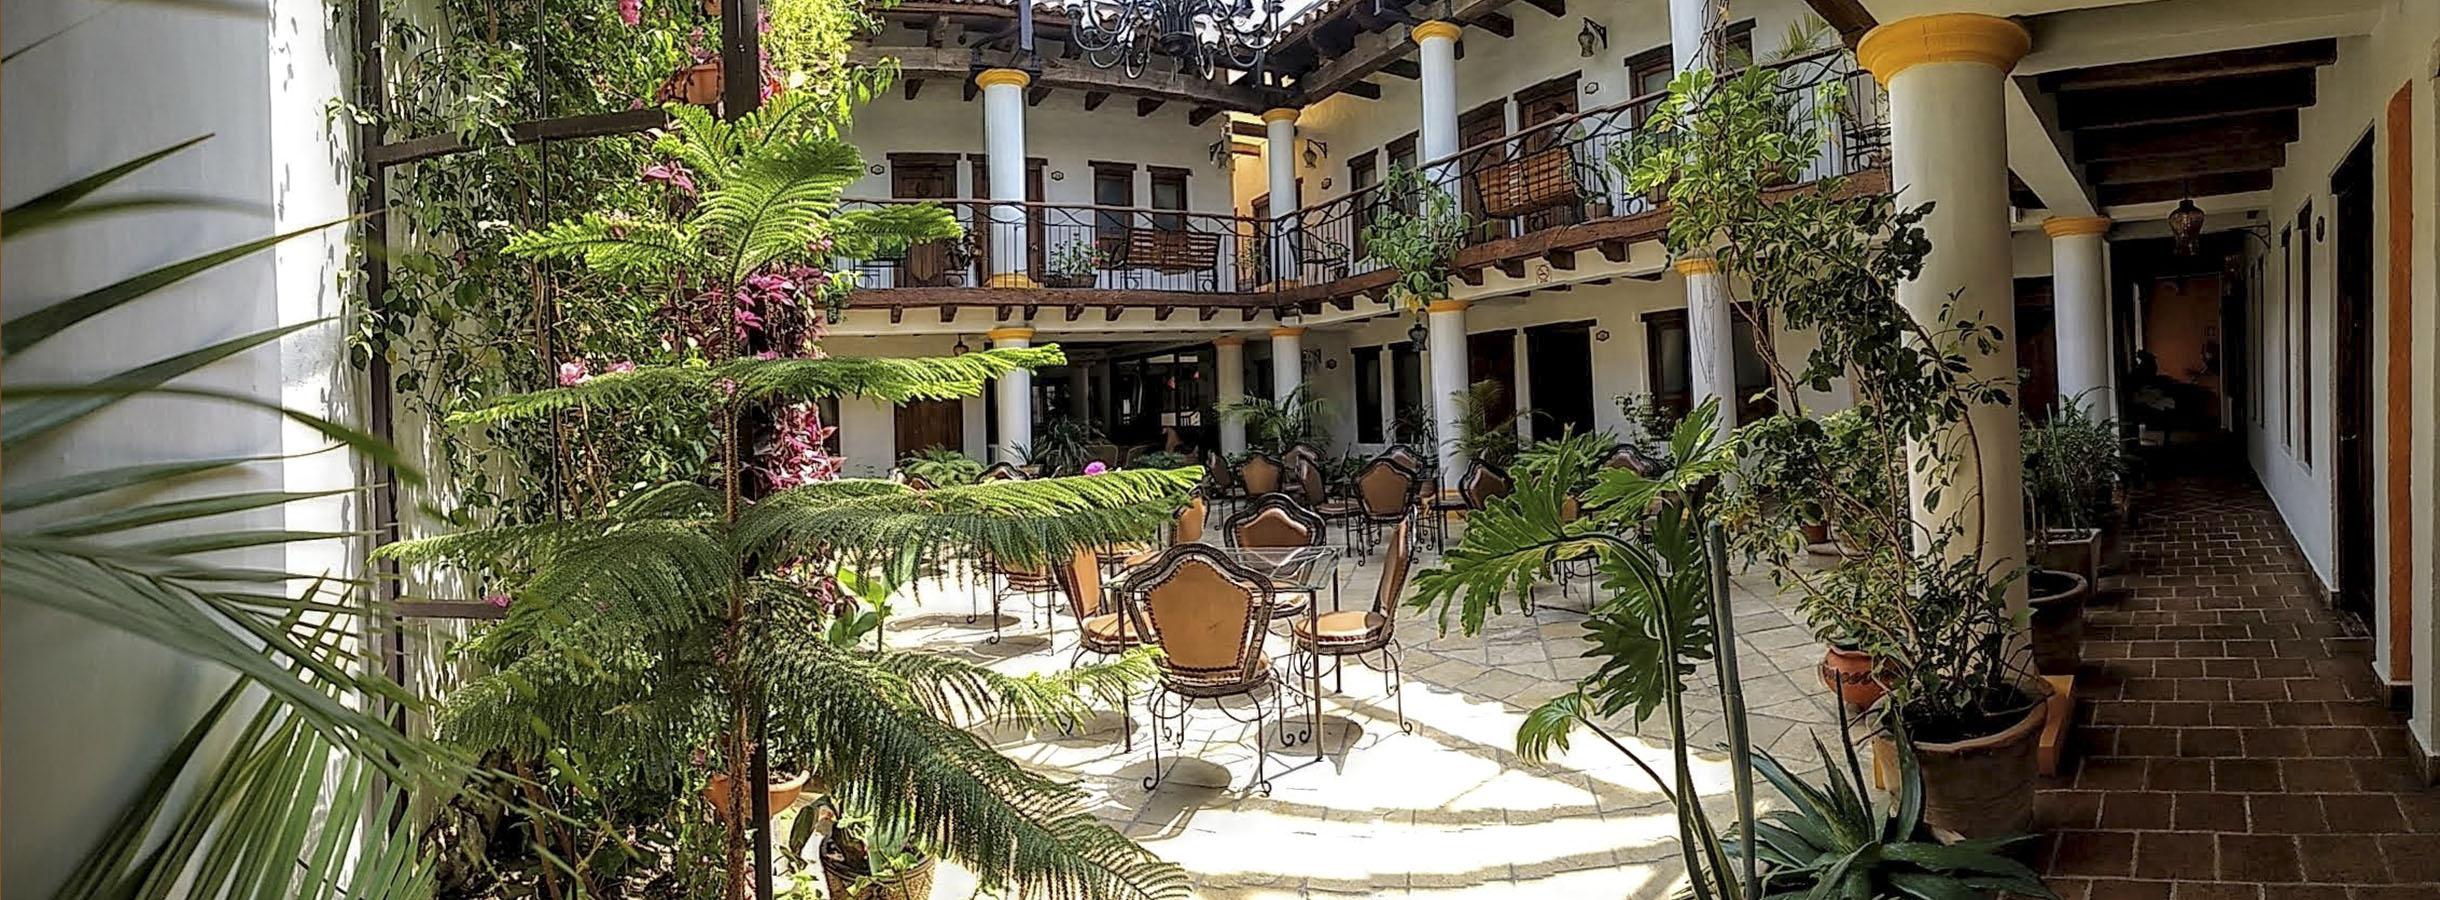 HOTEL GRAND MARIA SAN CRISTOBAL DE LAS CASAS 4* (Mexico) - from £ 32 |  HOTELMIX